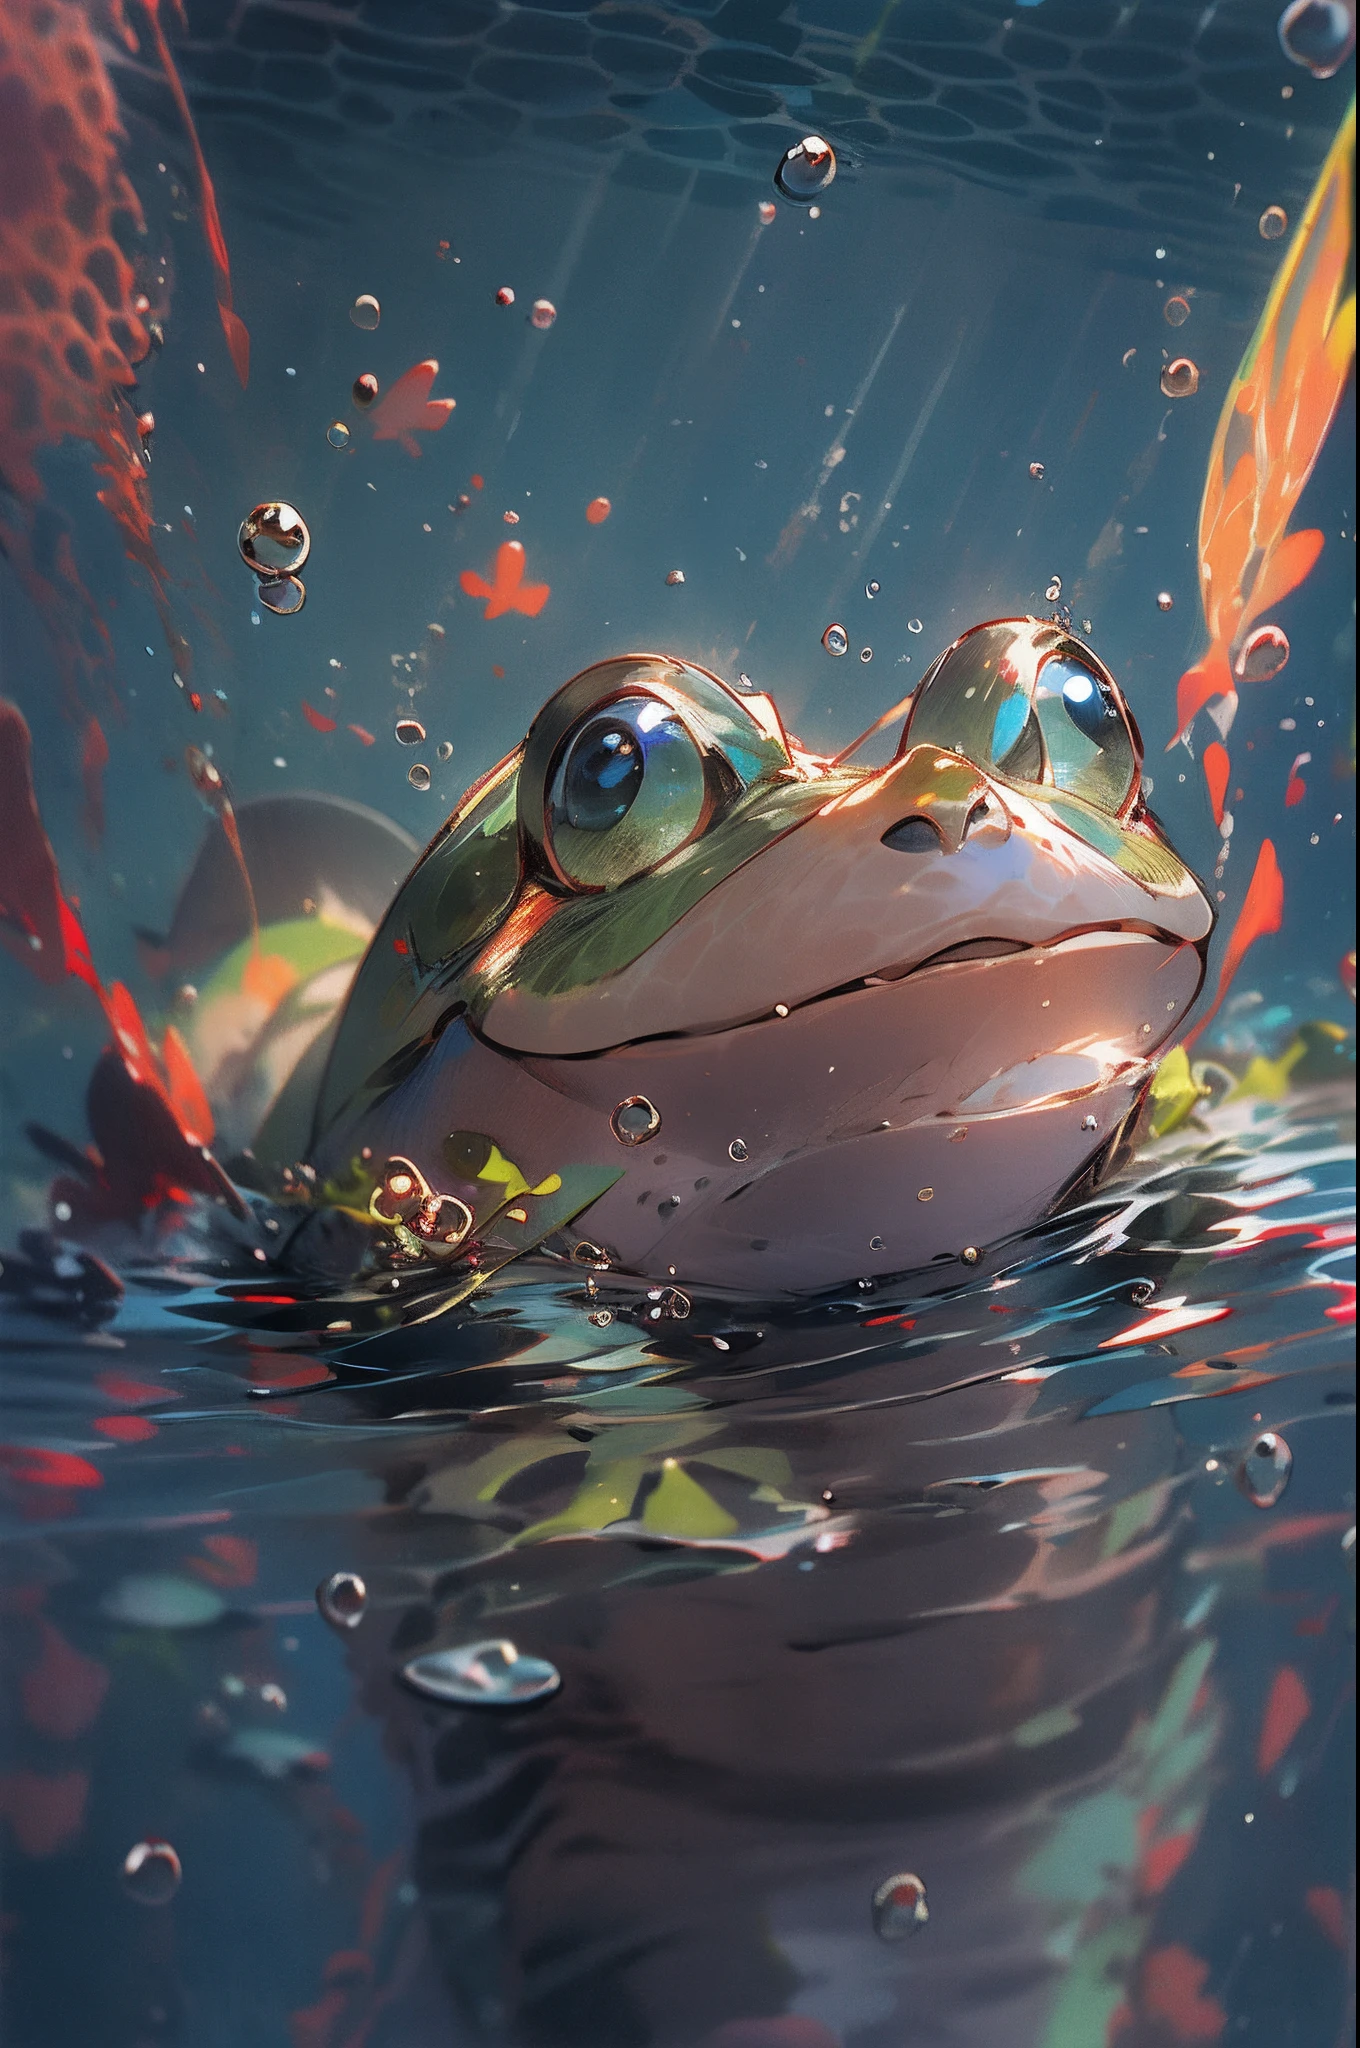 1隻可愛的青蛙, 臉部特寫, 肖像, 毛茸茸的, 無人, 在水裡, 海底, 游泳, 水泡, 氣泡, 更多細節, 飽和的顏色, 可愛的微笑, 最好的品質, 8K, 高飽和度